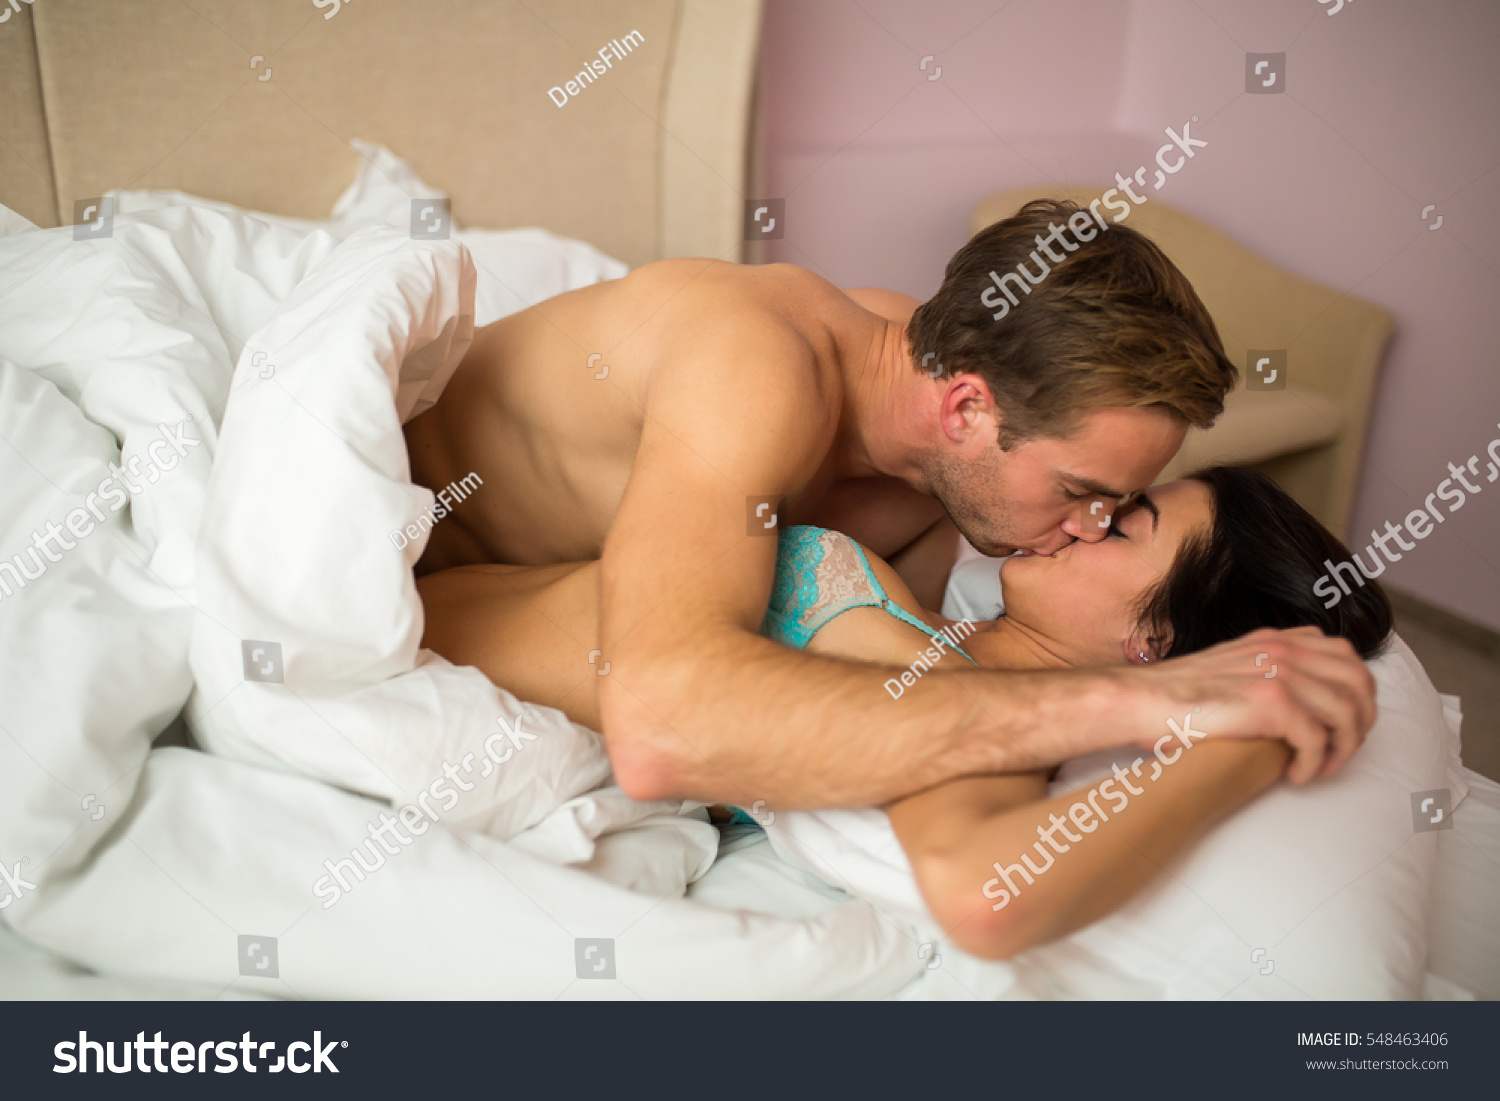 Красивые молодые люди показывают свой домашний секс в спальне